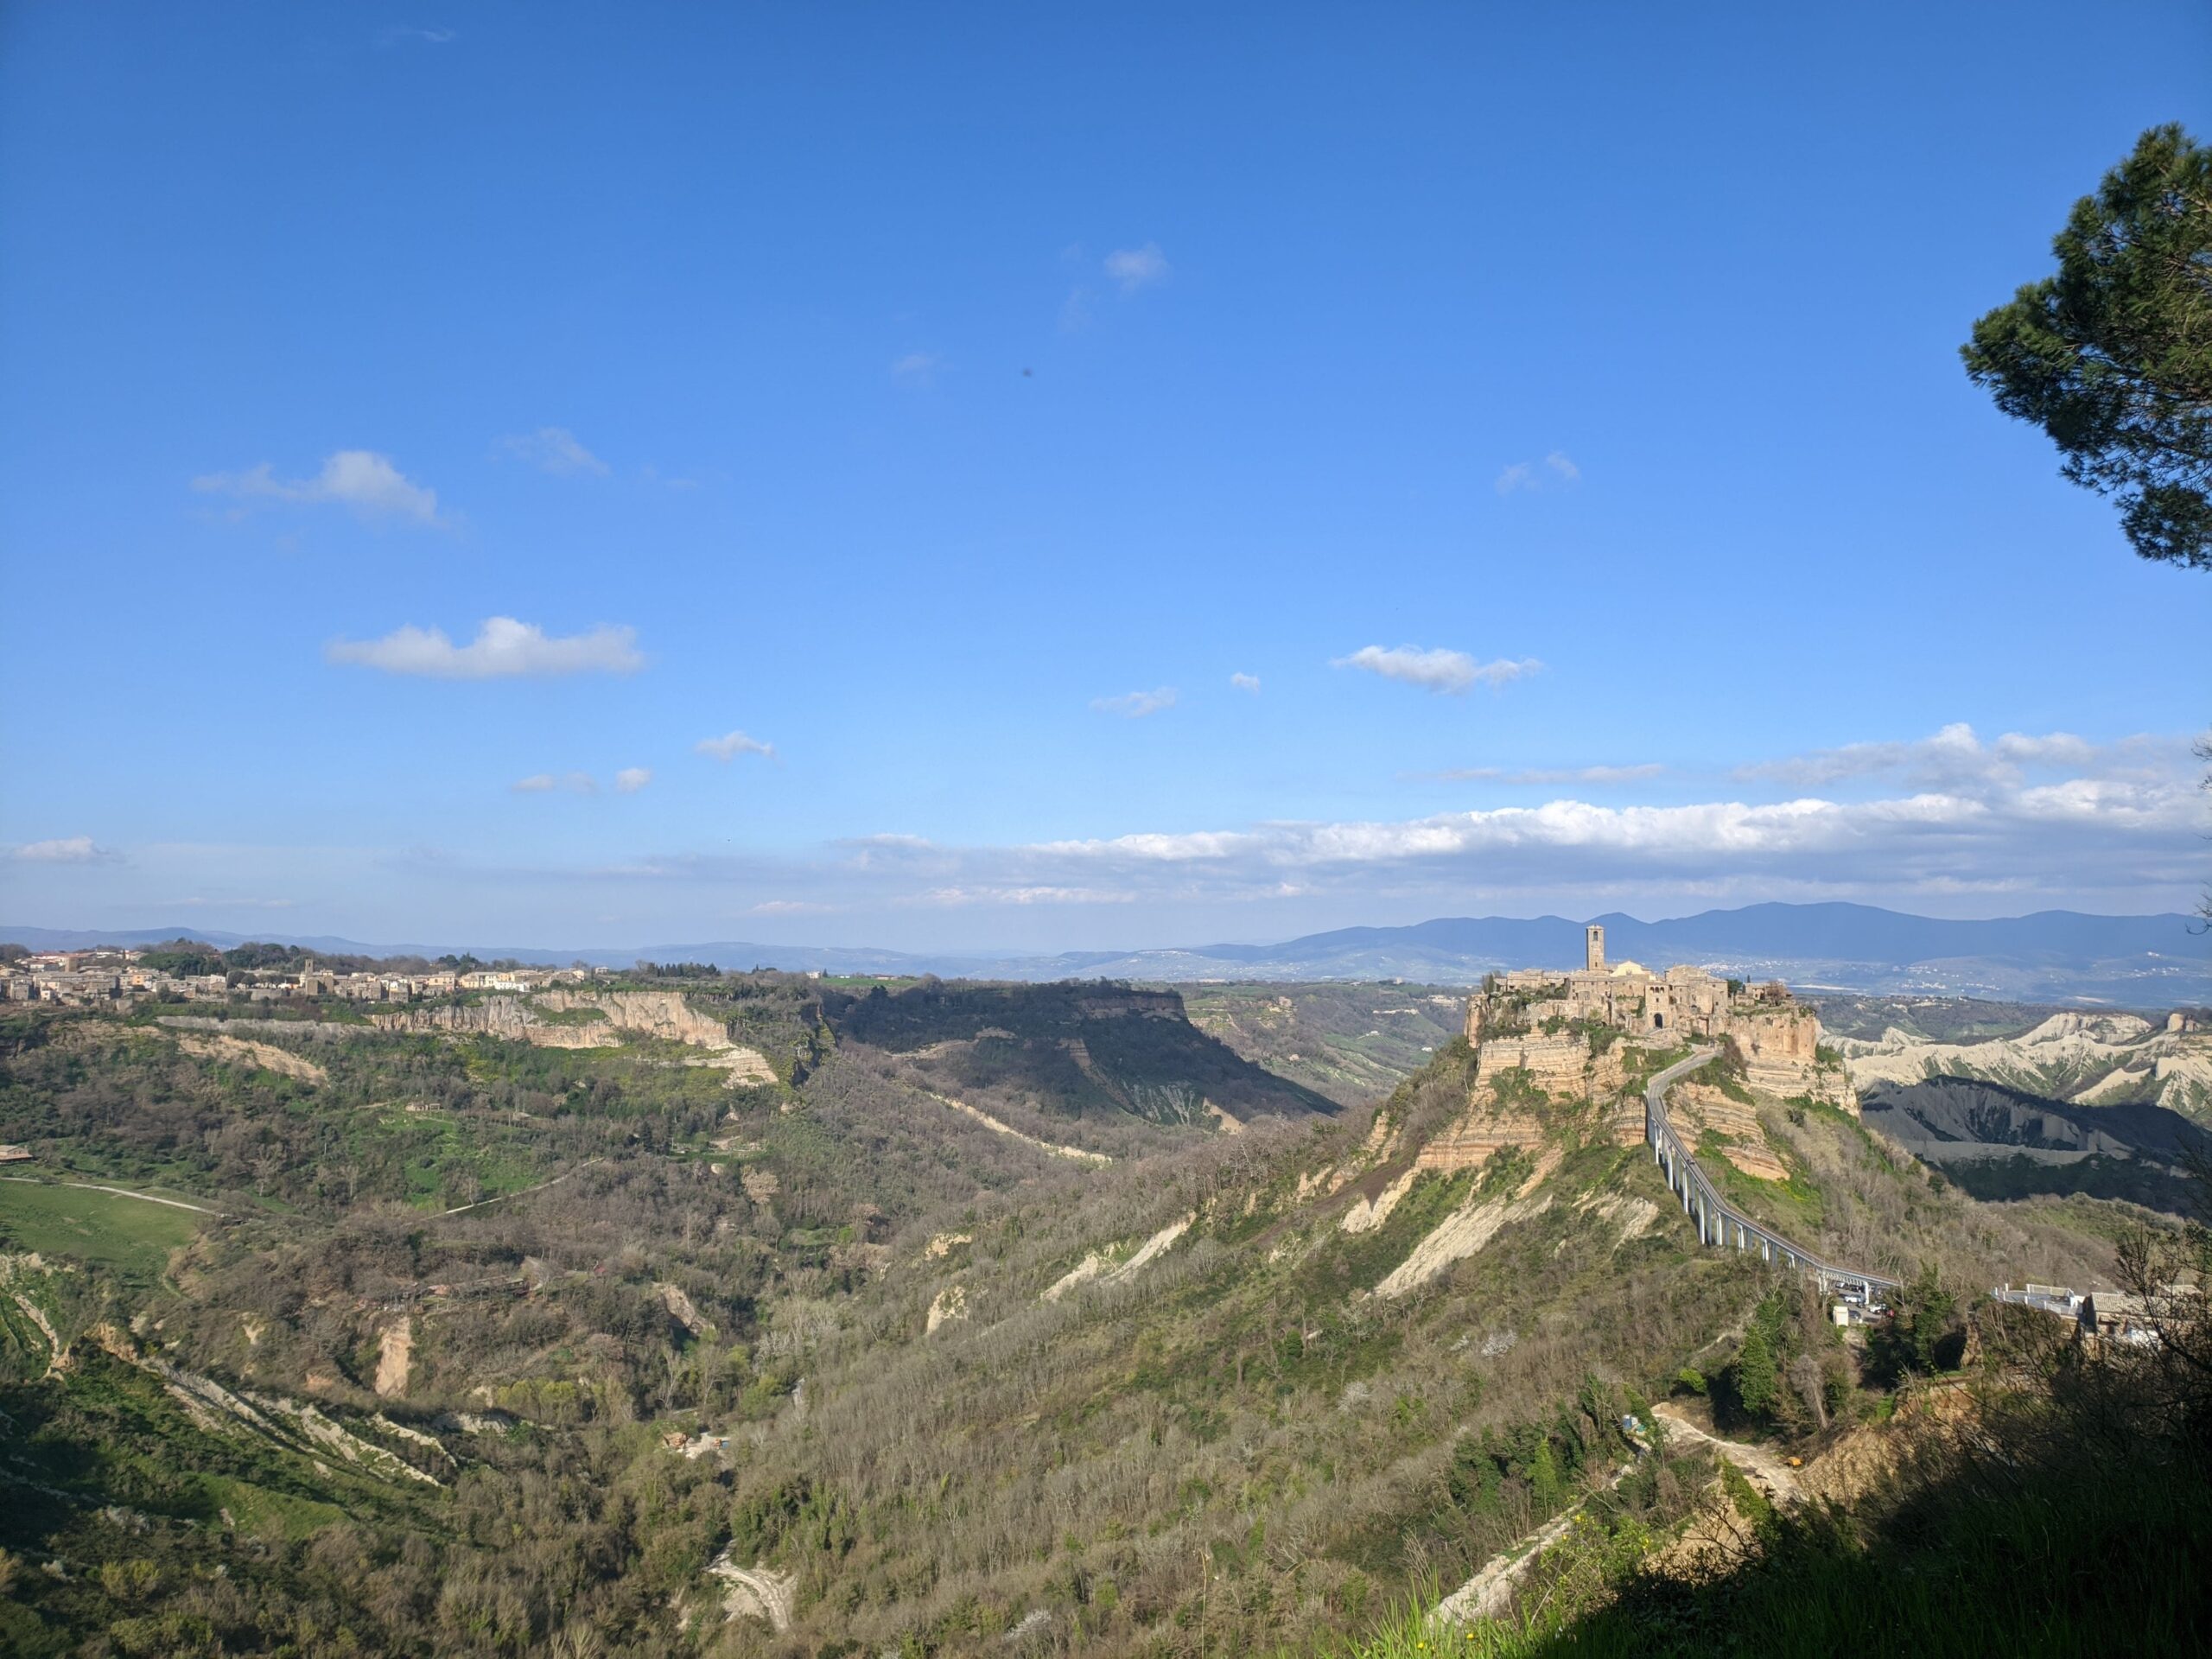 Civita di bagnoregio vista de longe, com um vale ao seu redor